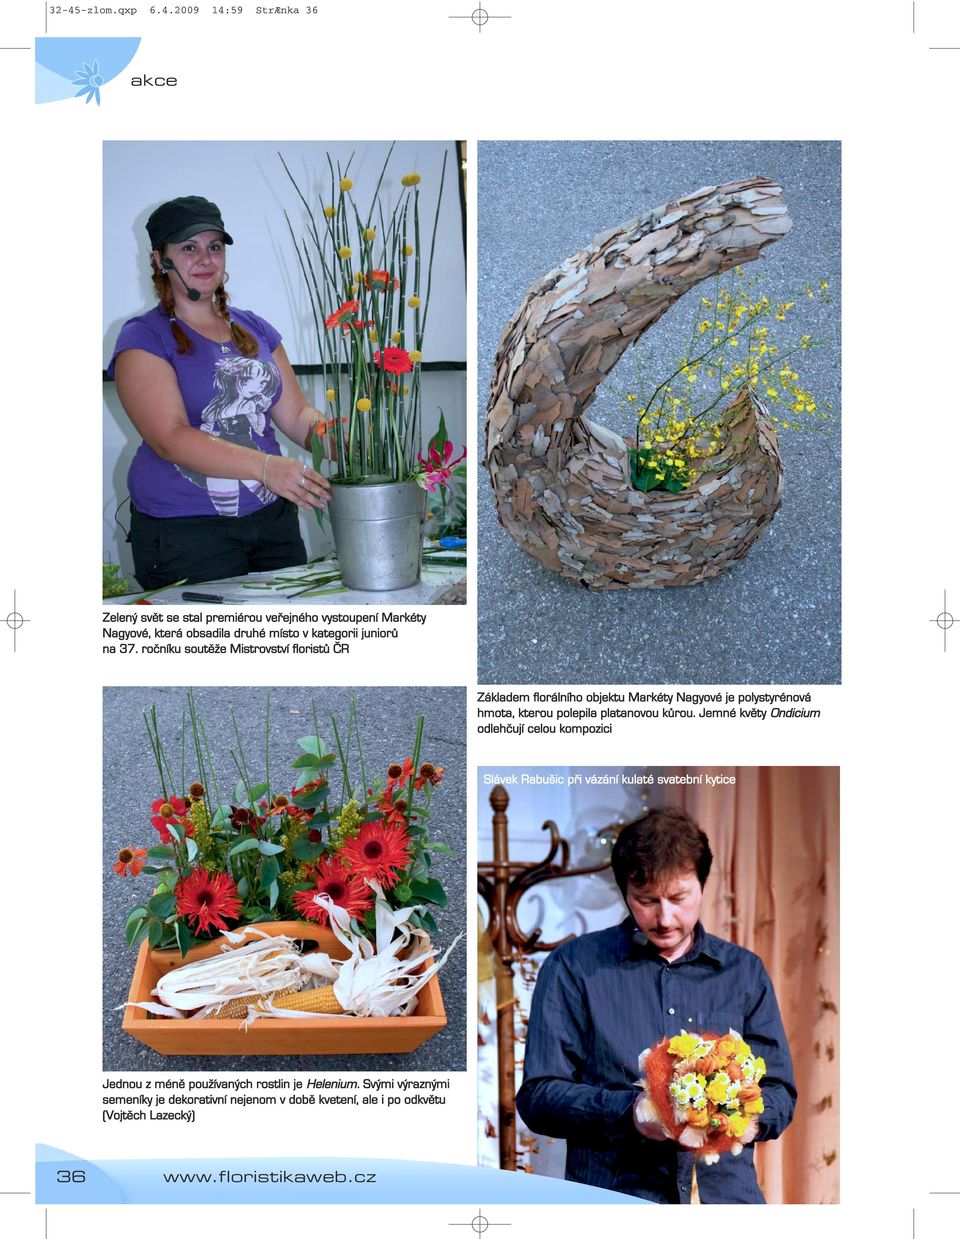 ročníku soutěže Mistrovství floristů ČR Základem florálního objektu Markéty Nagyové je polystyrénová hmota, kterou polepila platanovou kůrou.